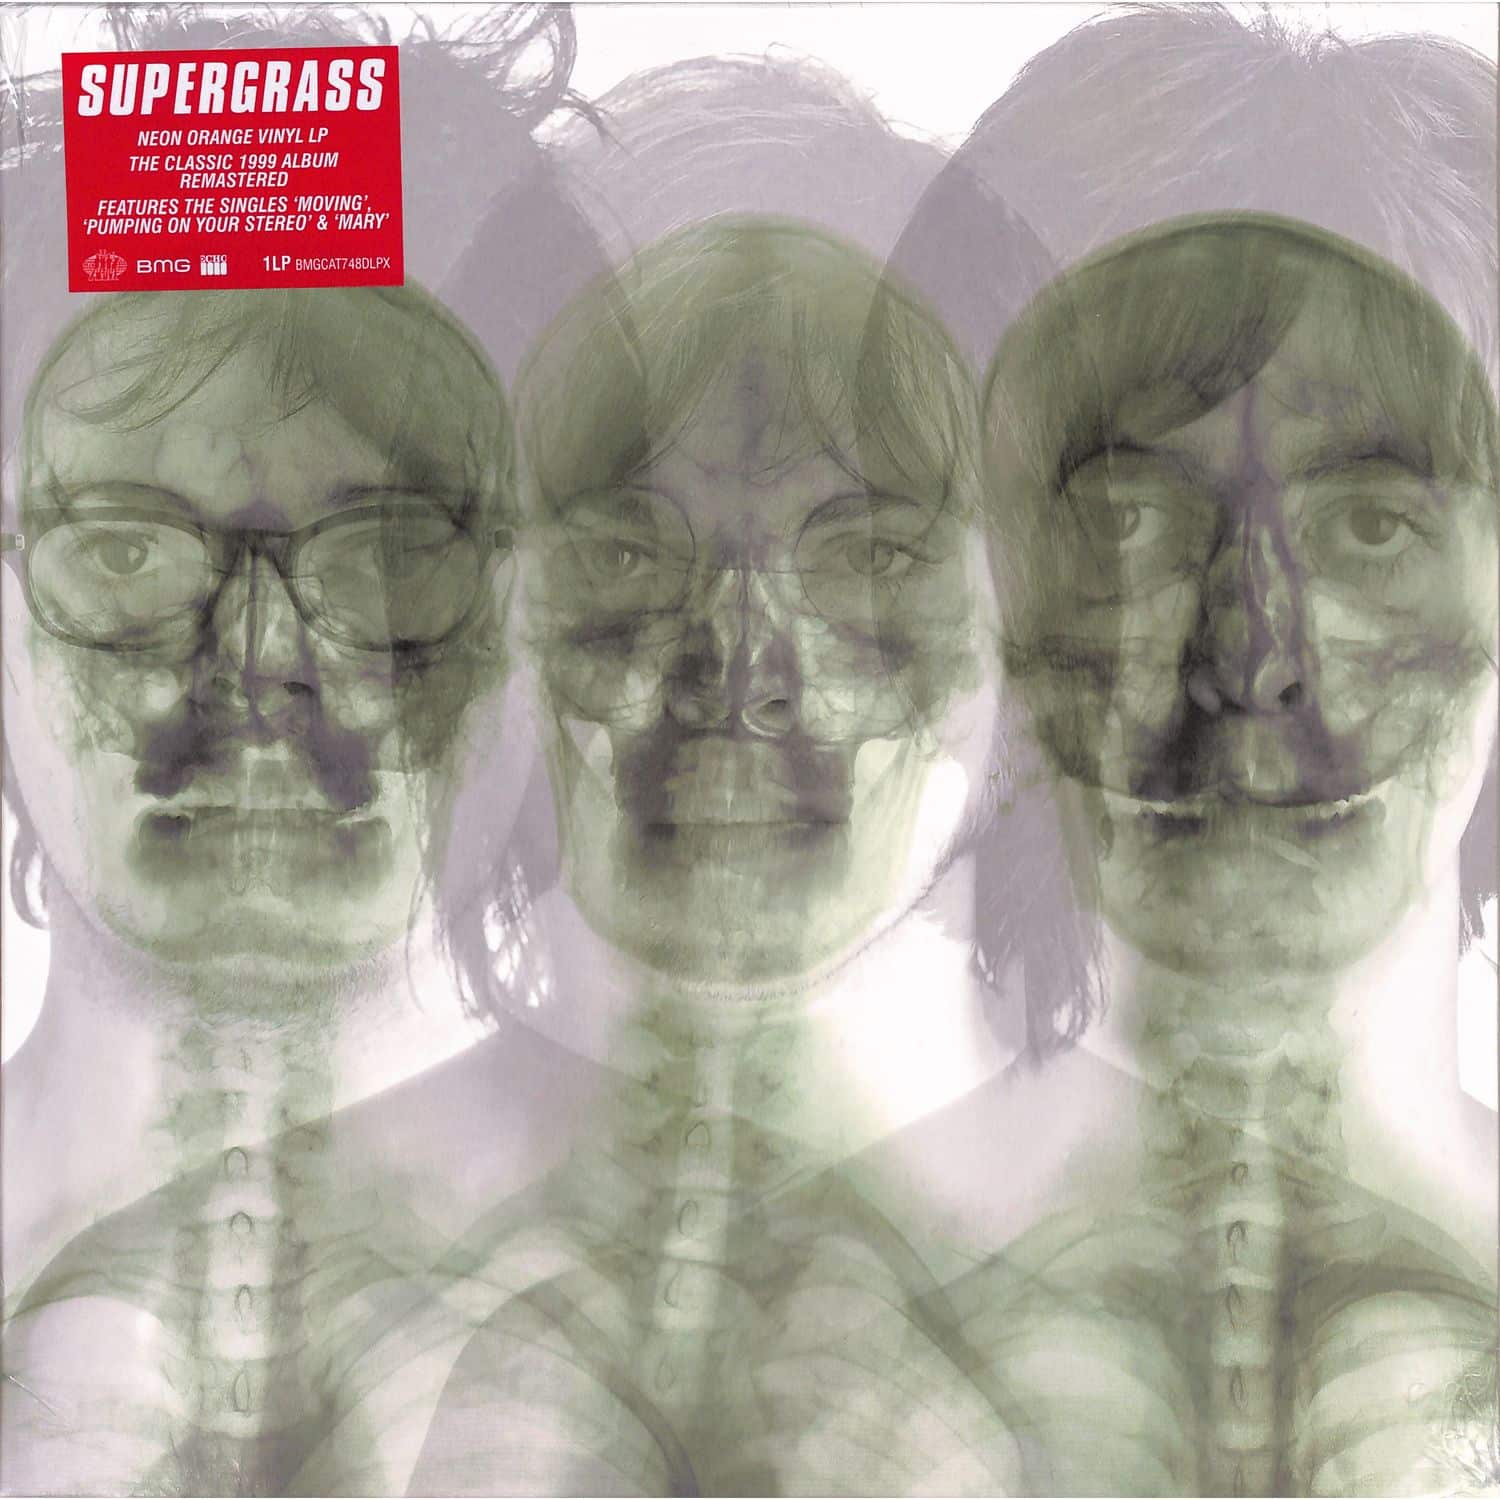 Supergrass - SUPERGRASS 